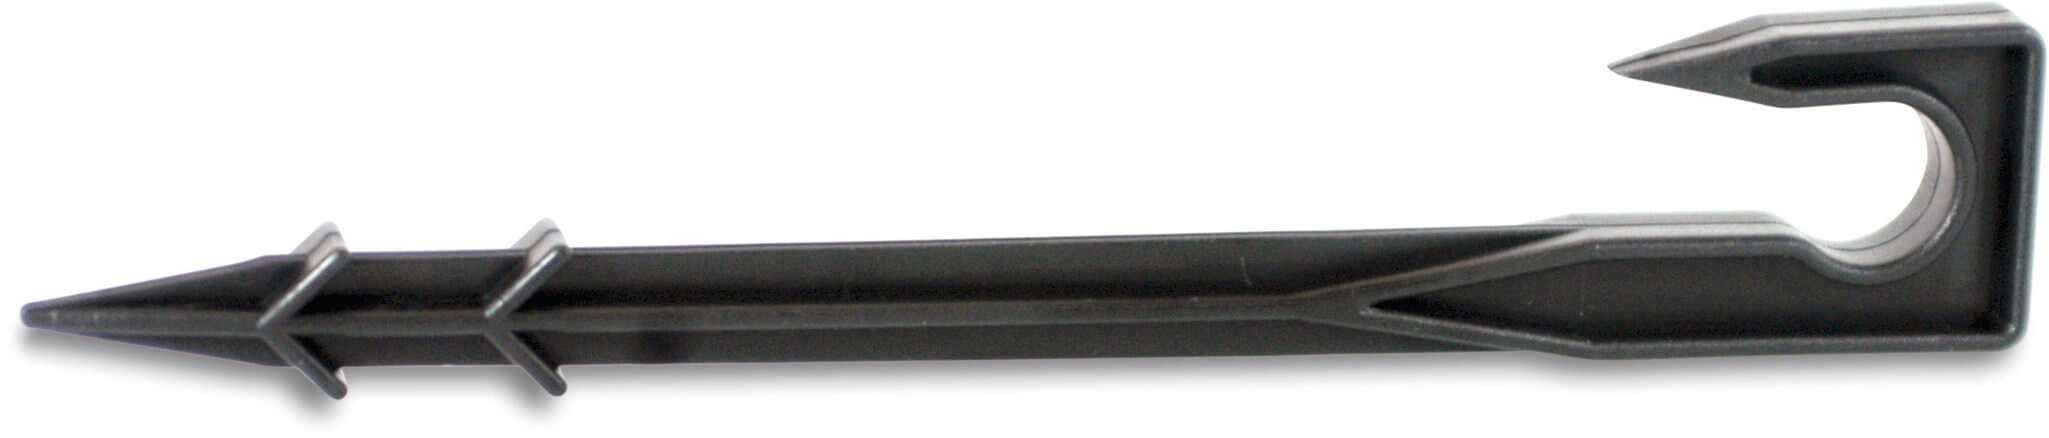 Förankringsklämma för rör plast 16-20 mm svart